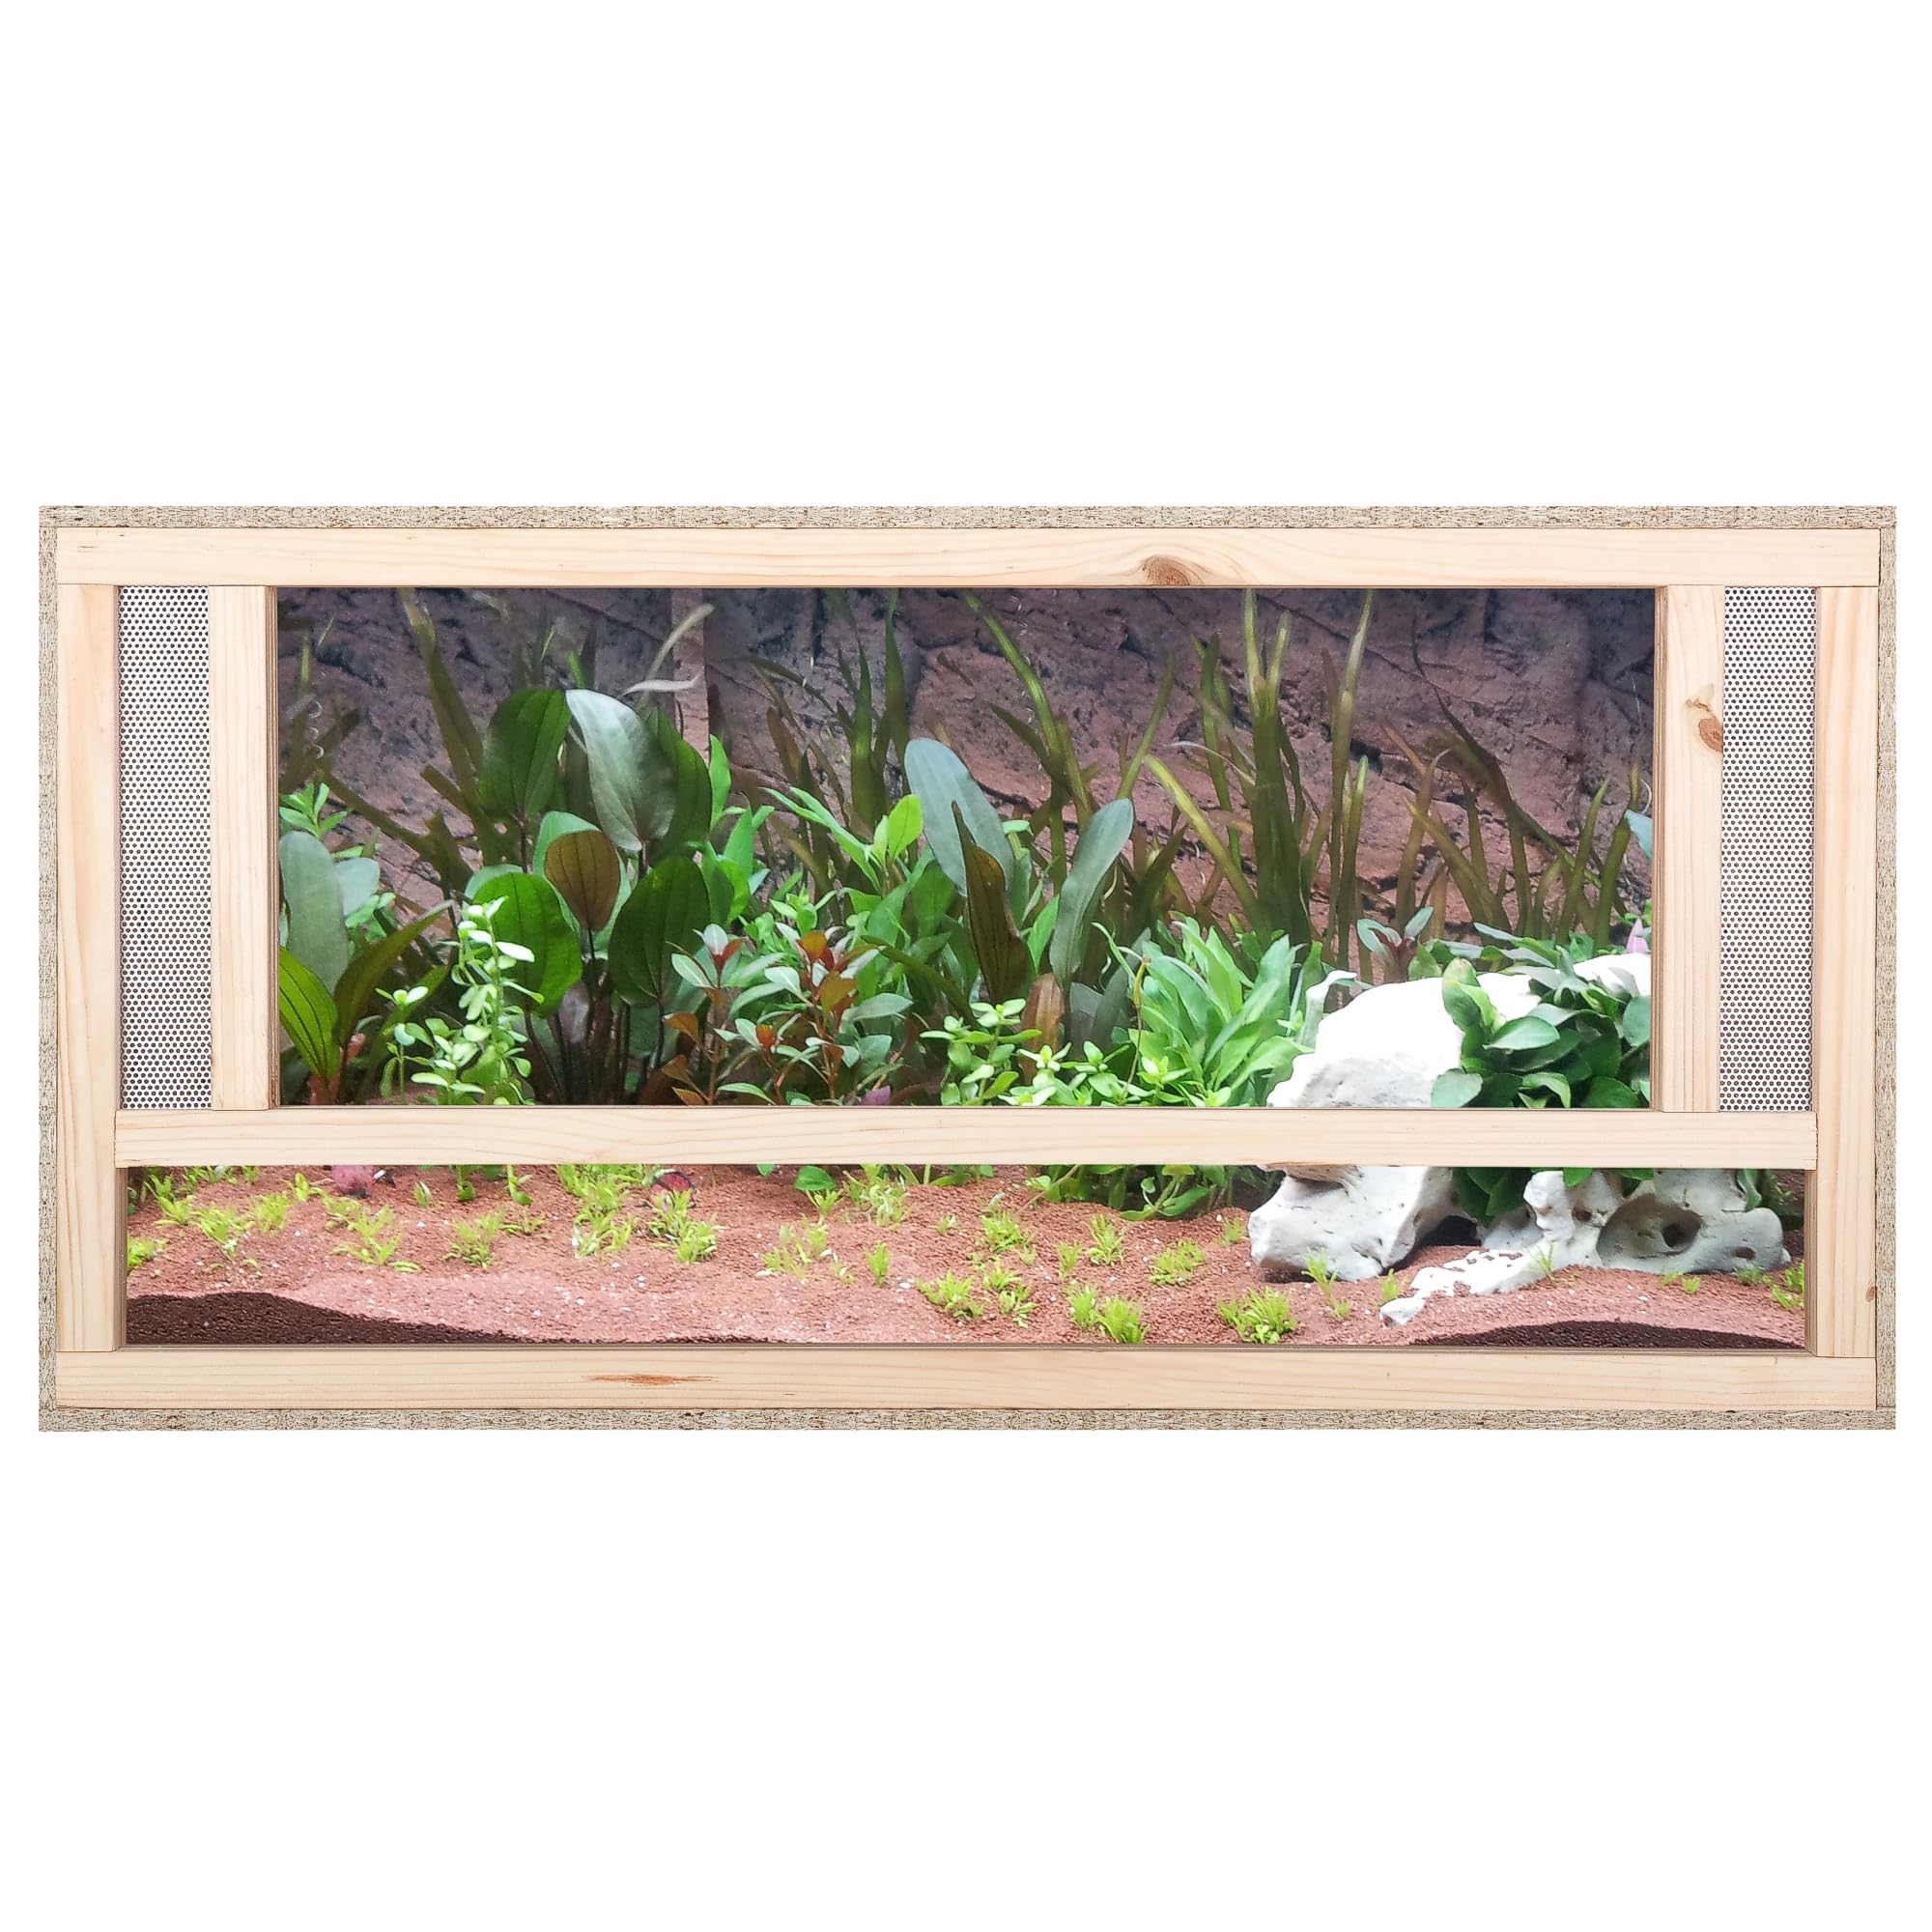 ECOZONE Holz Terrarium mit Frontbelüftung 80x50x50 cm - Holzterrarium aus OSB Platten -Terrarien für exotische Tiere wie Schlangen, Reptilien & Amphibien